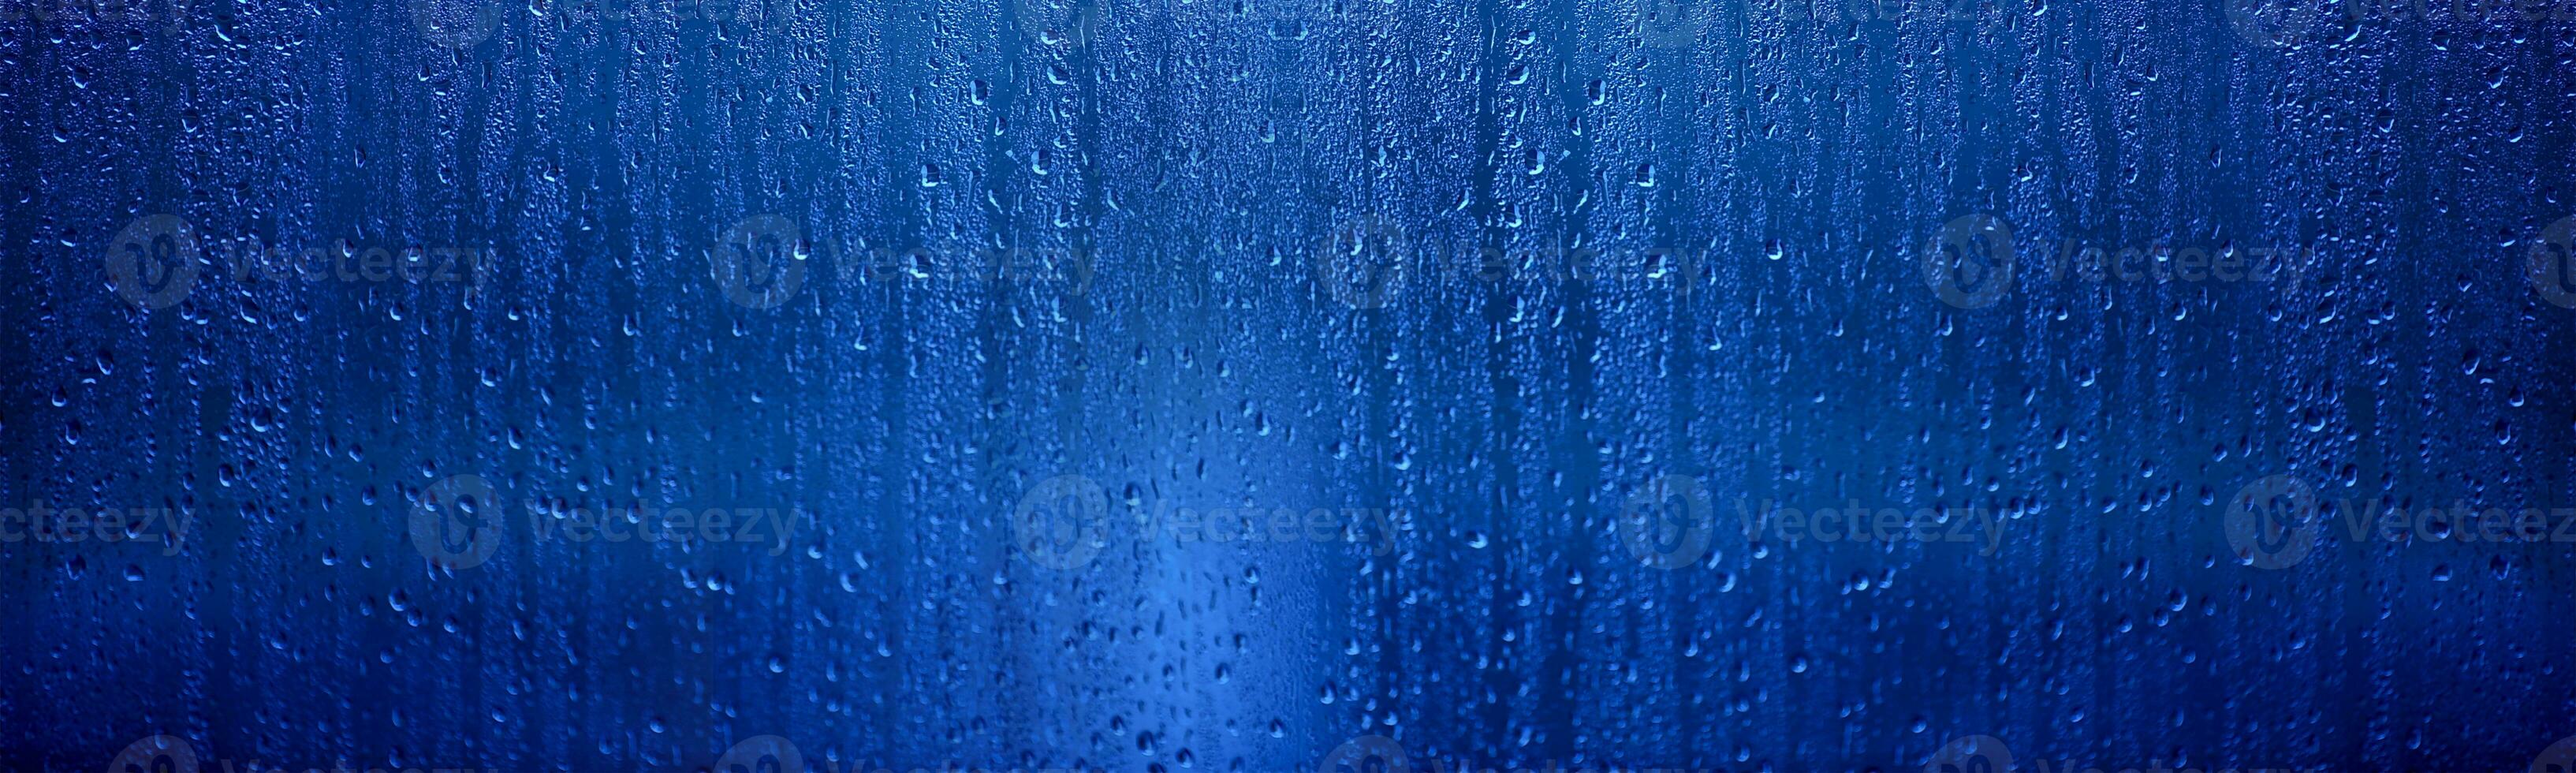 Car Wash Blue Background photo